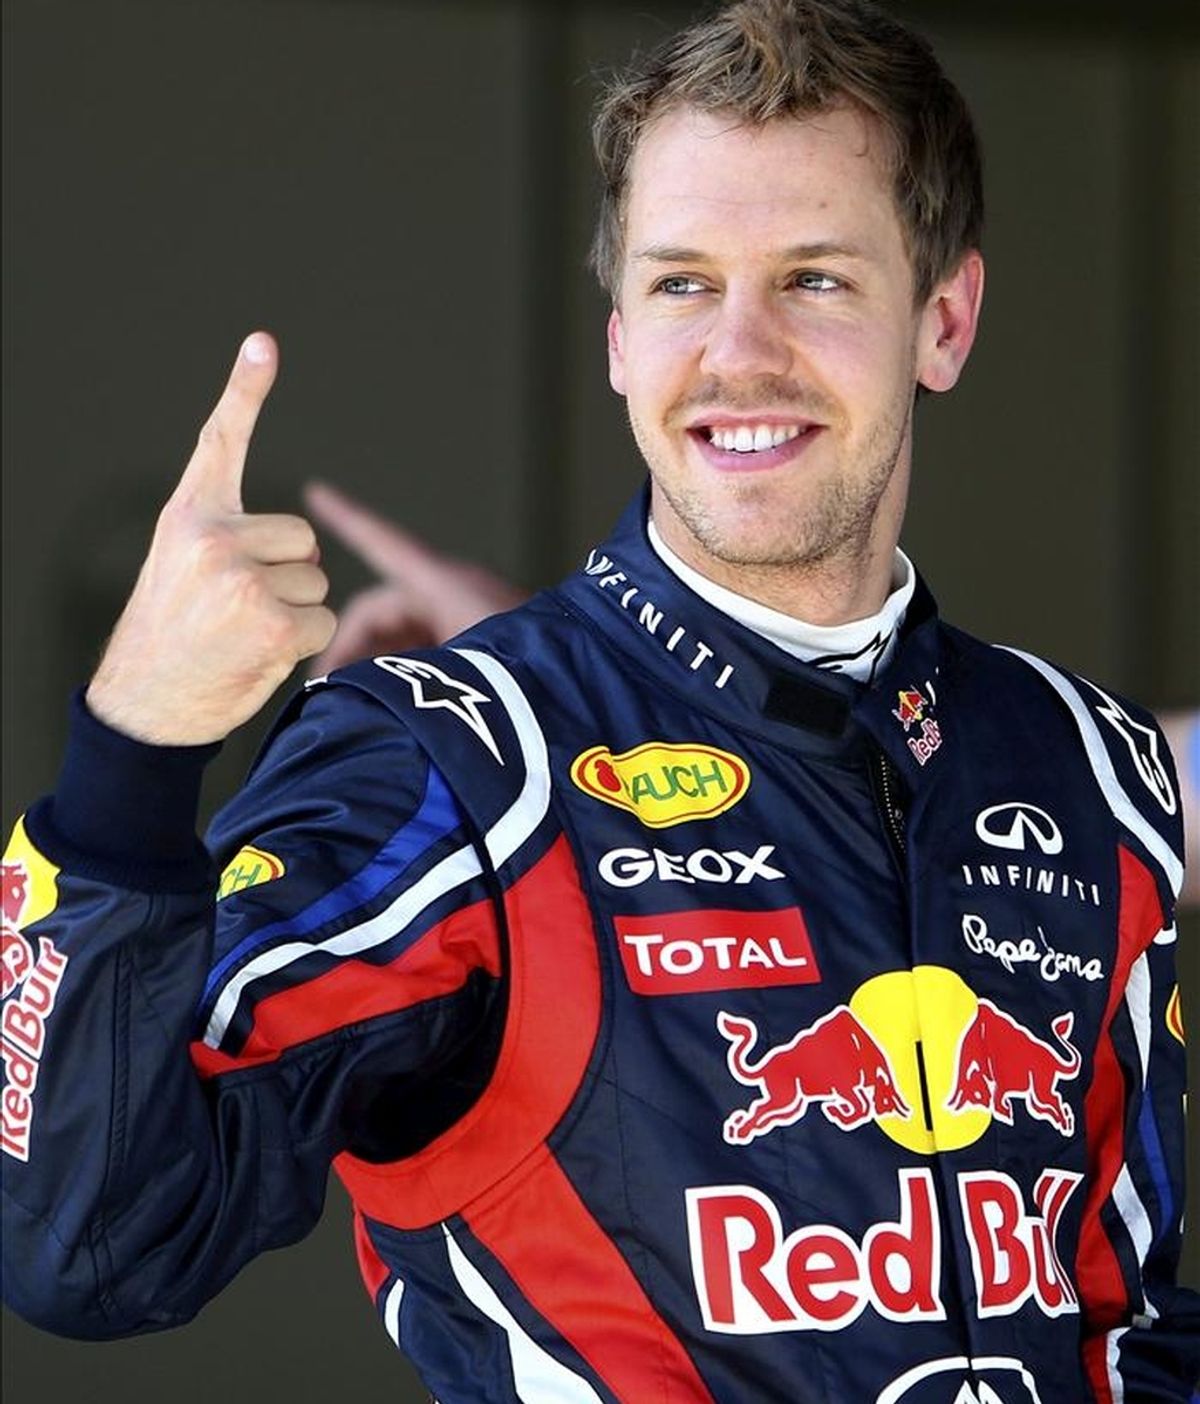 El piloto alemán Sebastian Vettel (Red Bull ) celebra su tiempo al término de los entrenamientos libres del Gran Premio de Turquía de Fórmula Uno, celebrado en Estambul. EFE